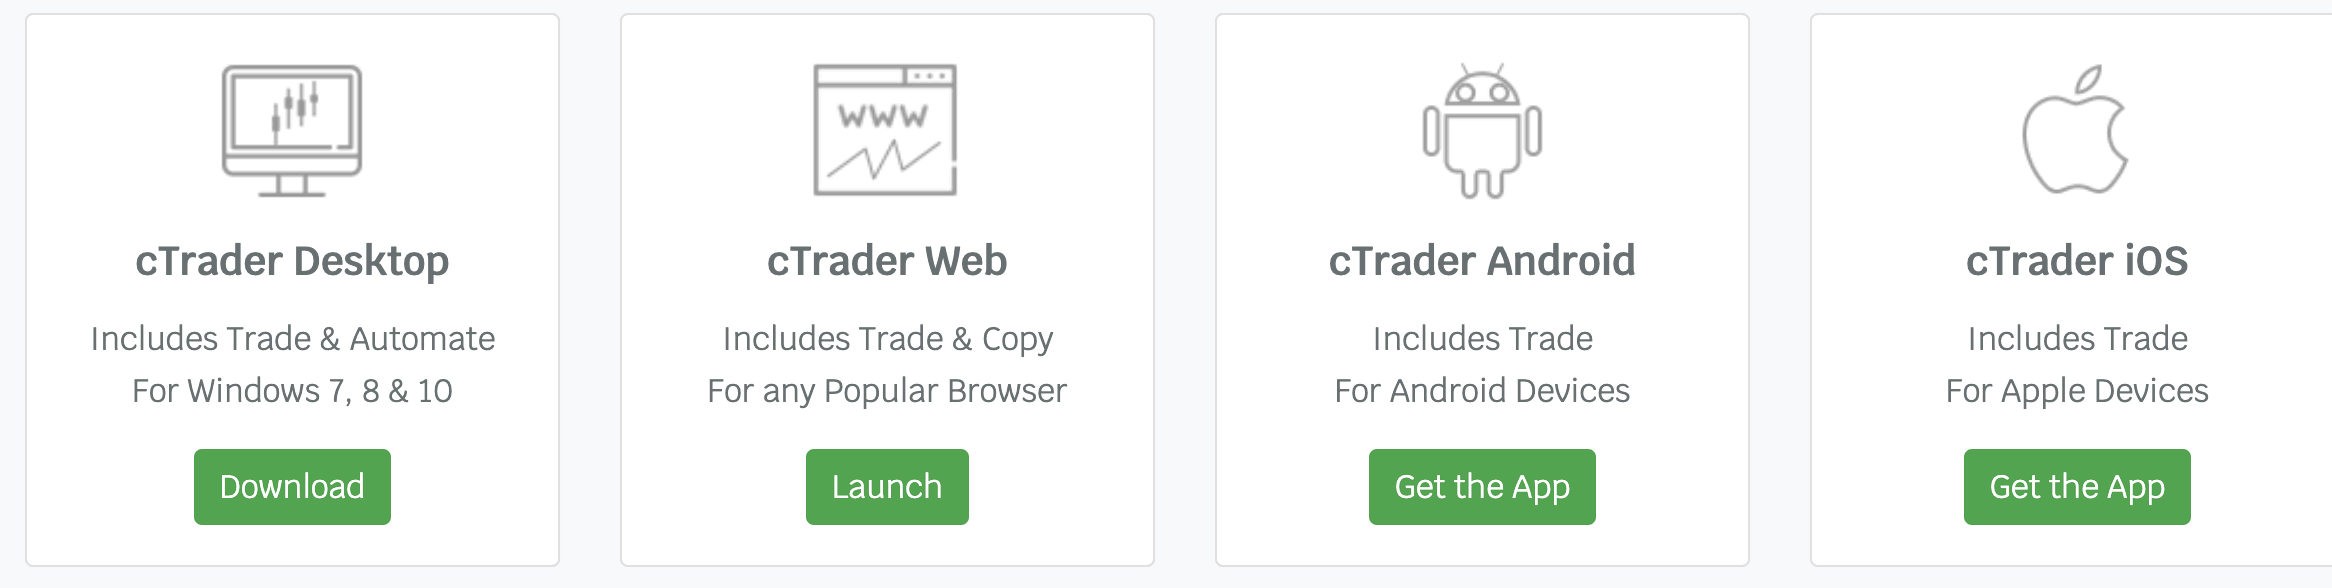 cTrader na různých zařízeních, jako je Desktop, Web, Android a iOS